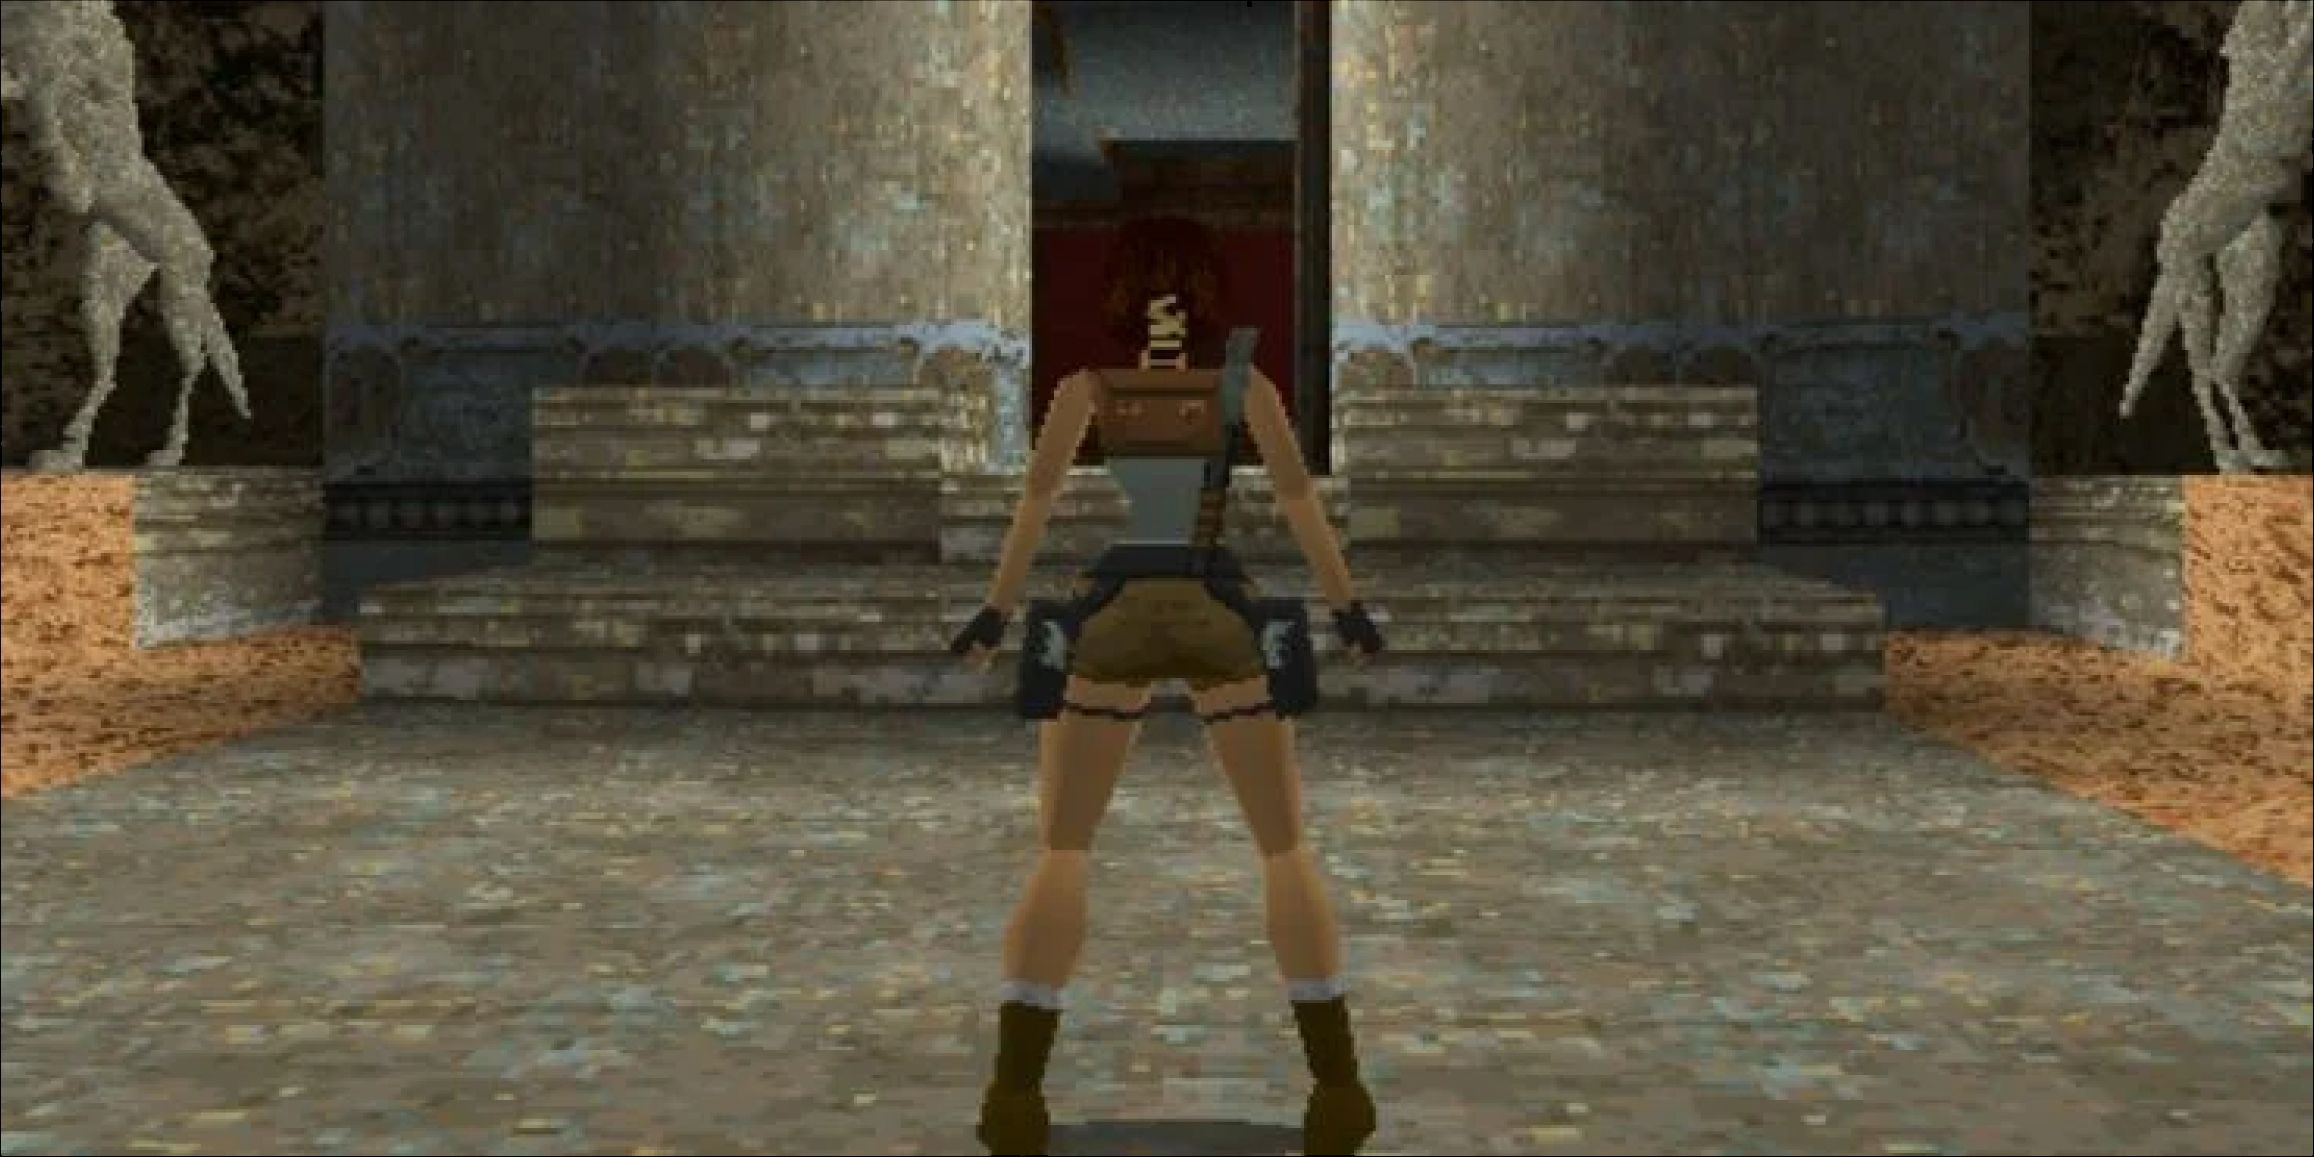 Lara Croft exploring ruins in Tomb Raider game